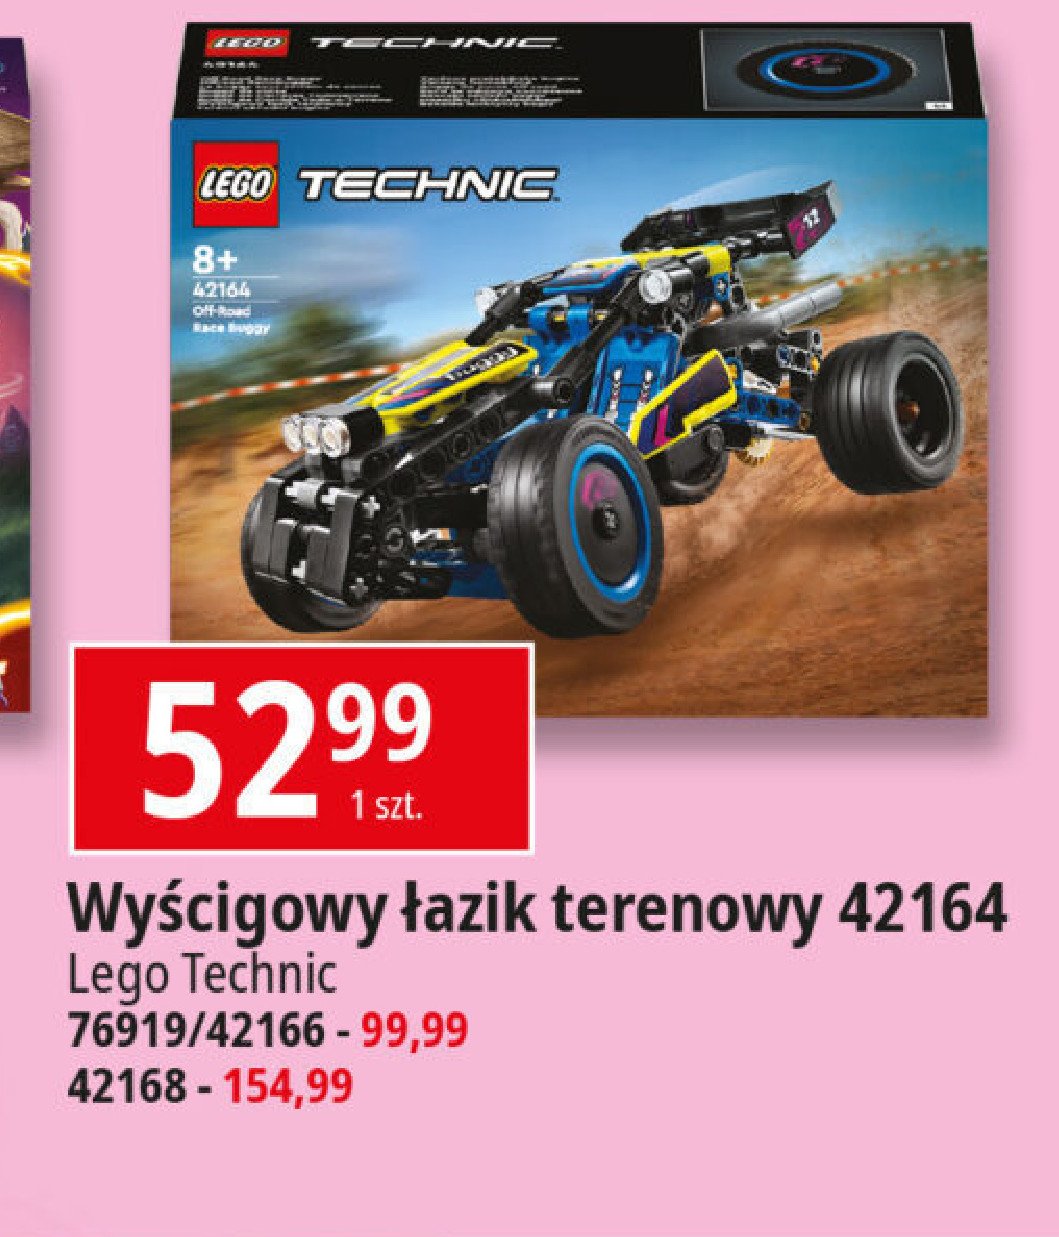 Klocki 42164 Lego technic promocja